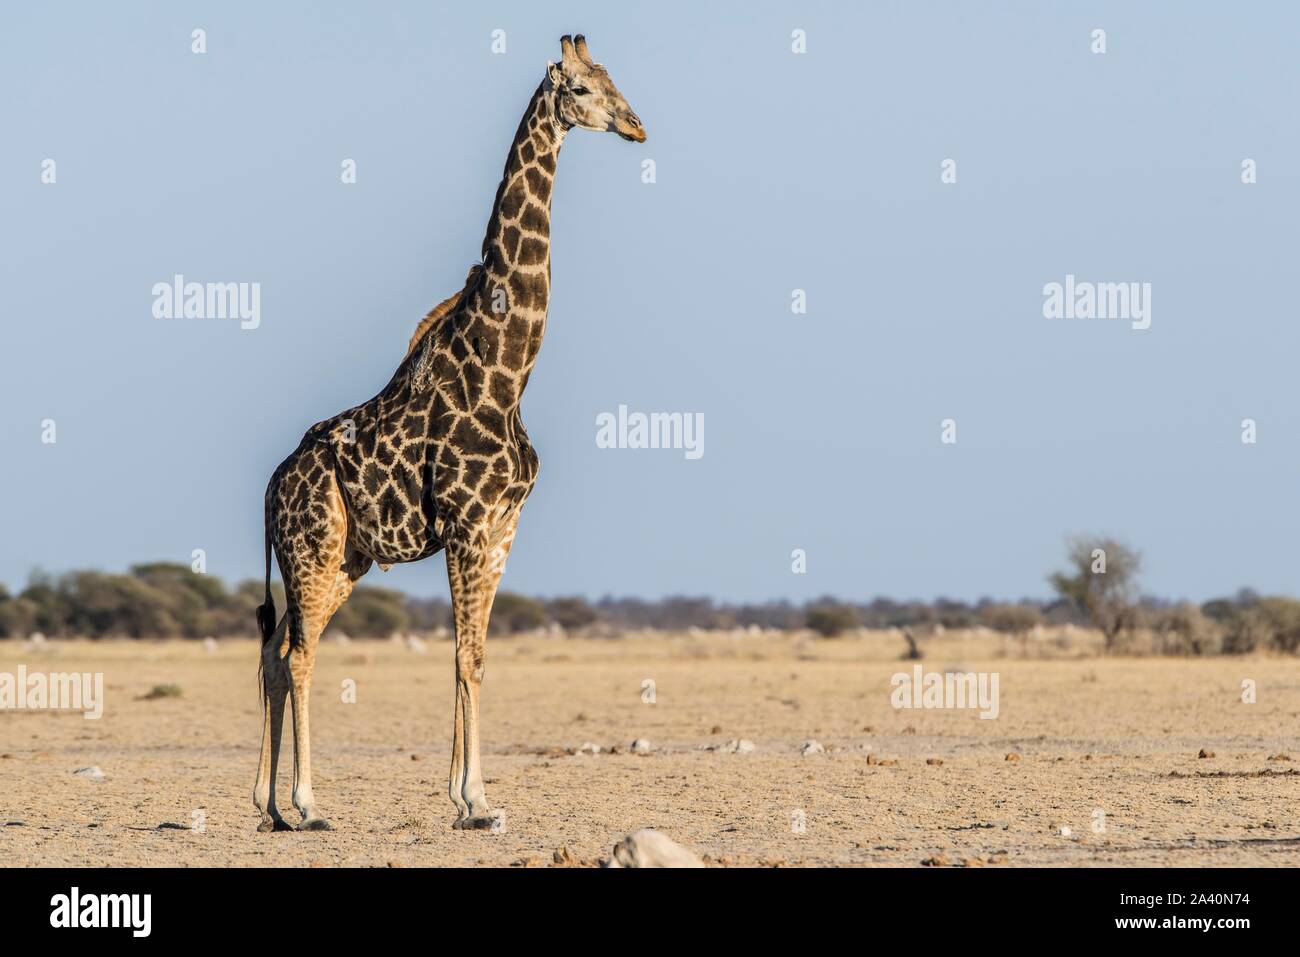 Angolan Giraffe (Giraffa camelopardalis angolensis), in dry savannah, Nxai Pan National Park, Ngamiland, Botswana Stock Photo